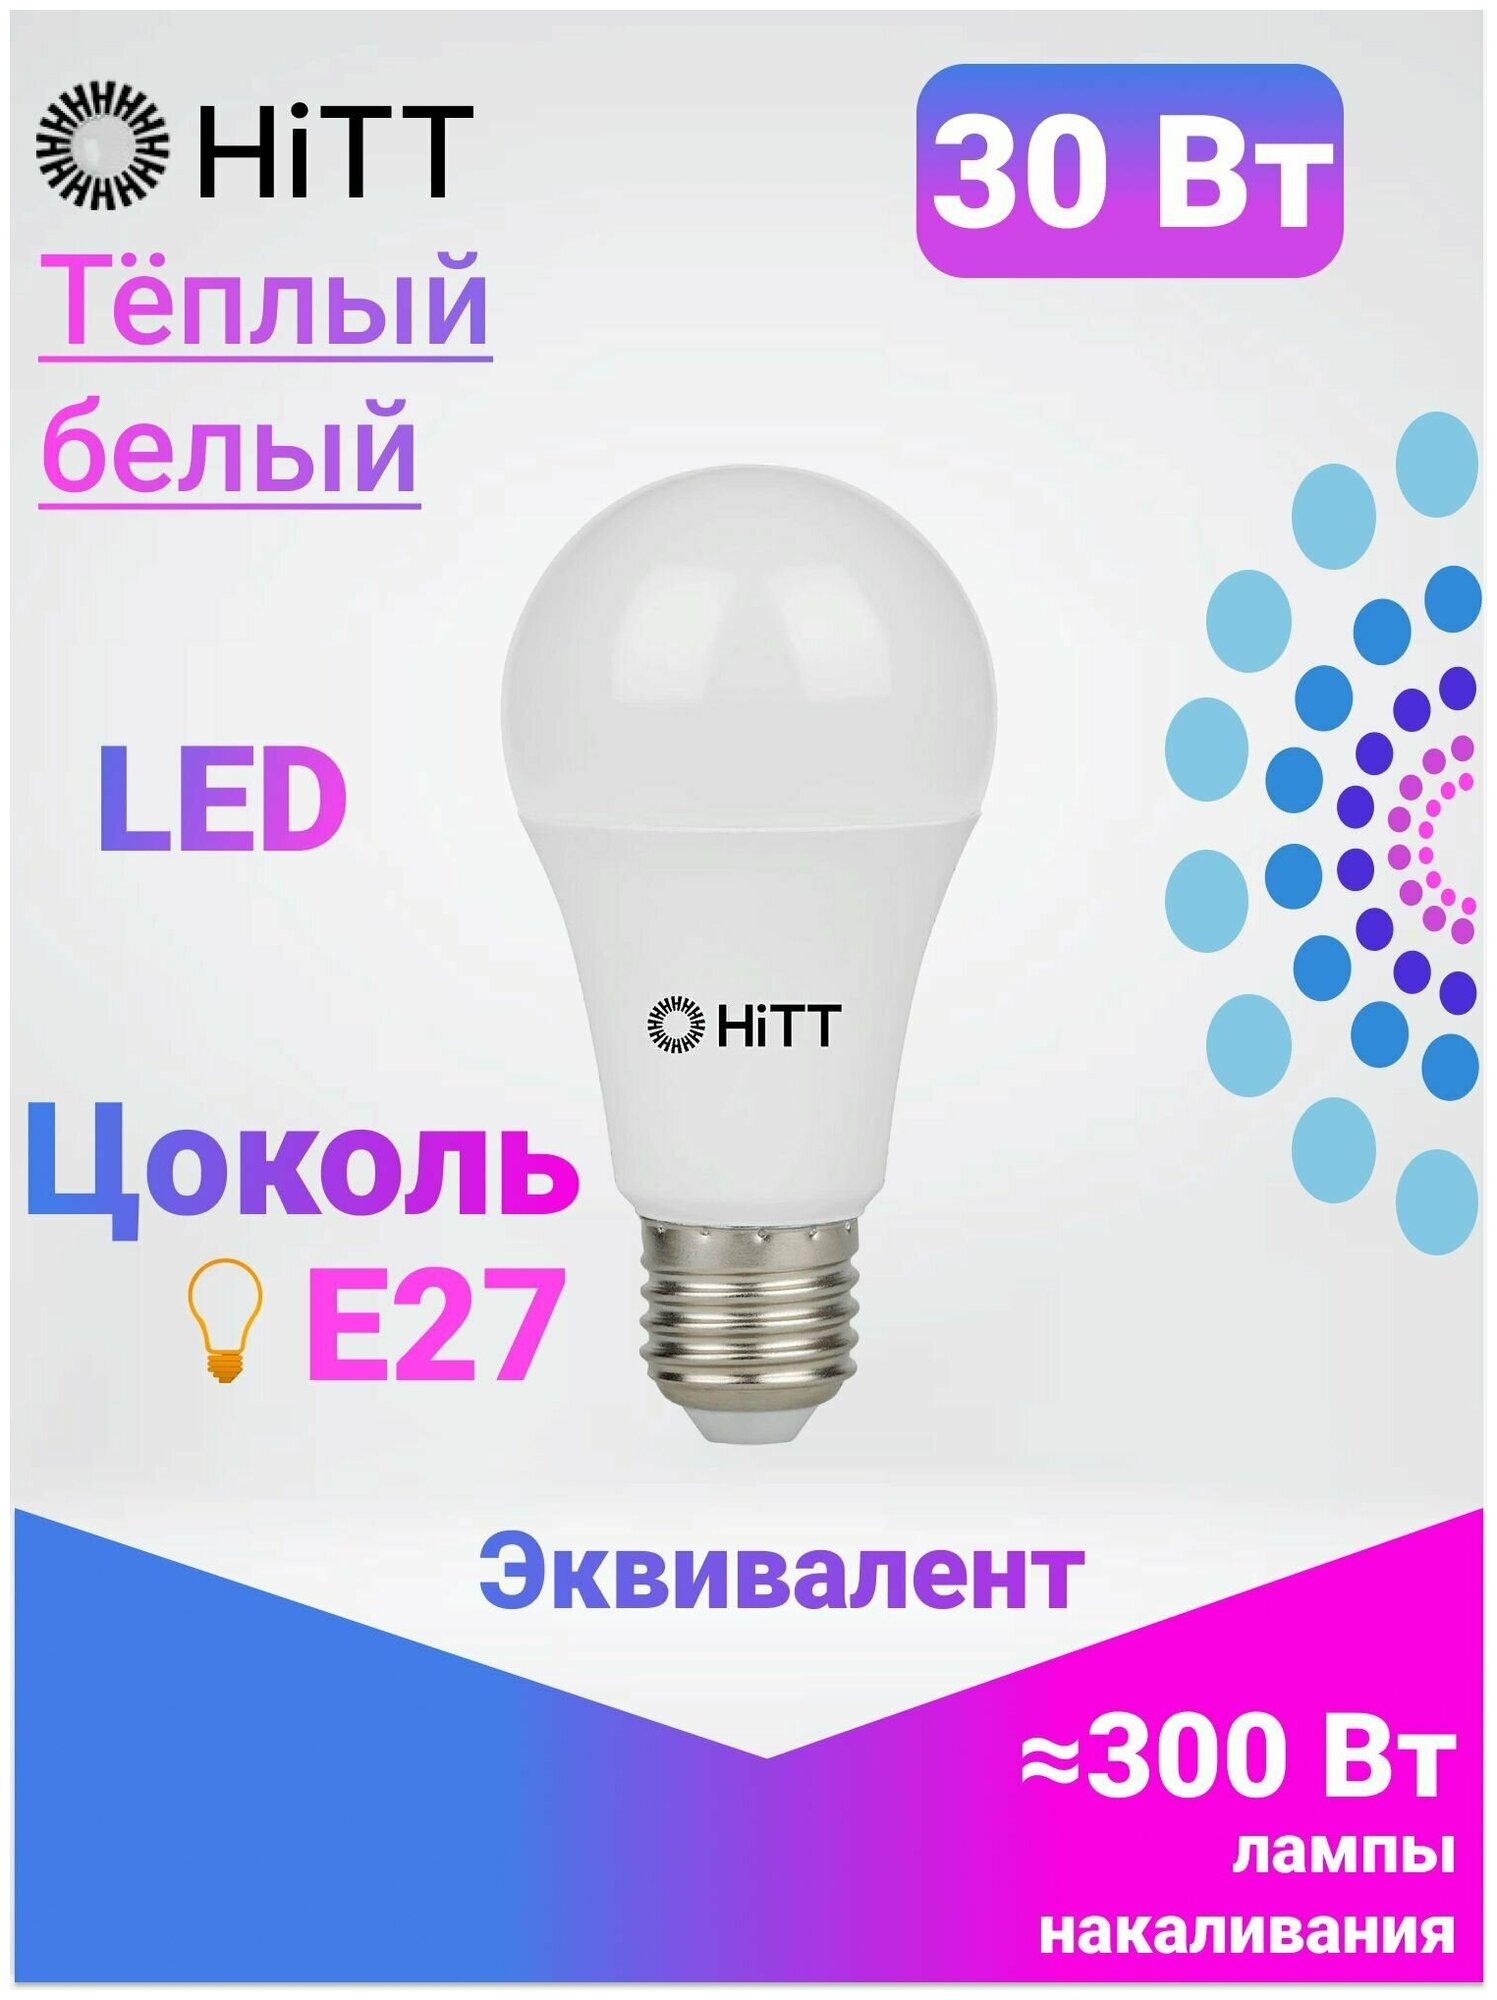 Энергоэффективная светодиодная лампа HiTT 30Вт E27 3000к